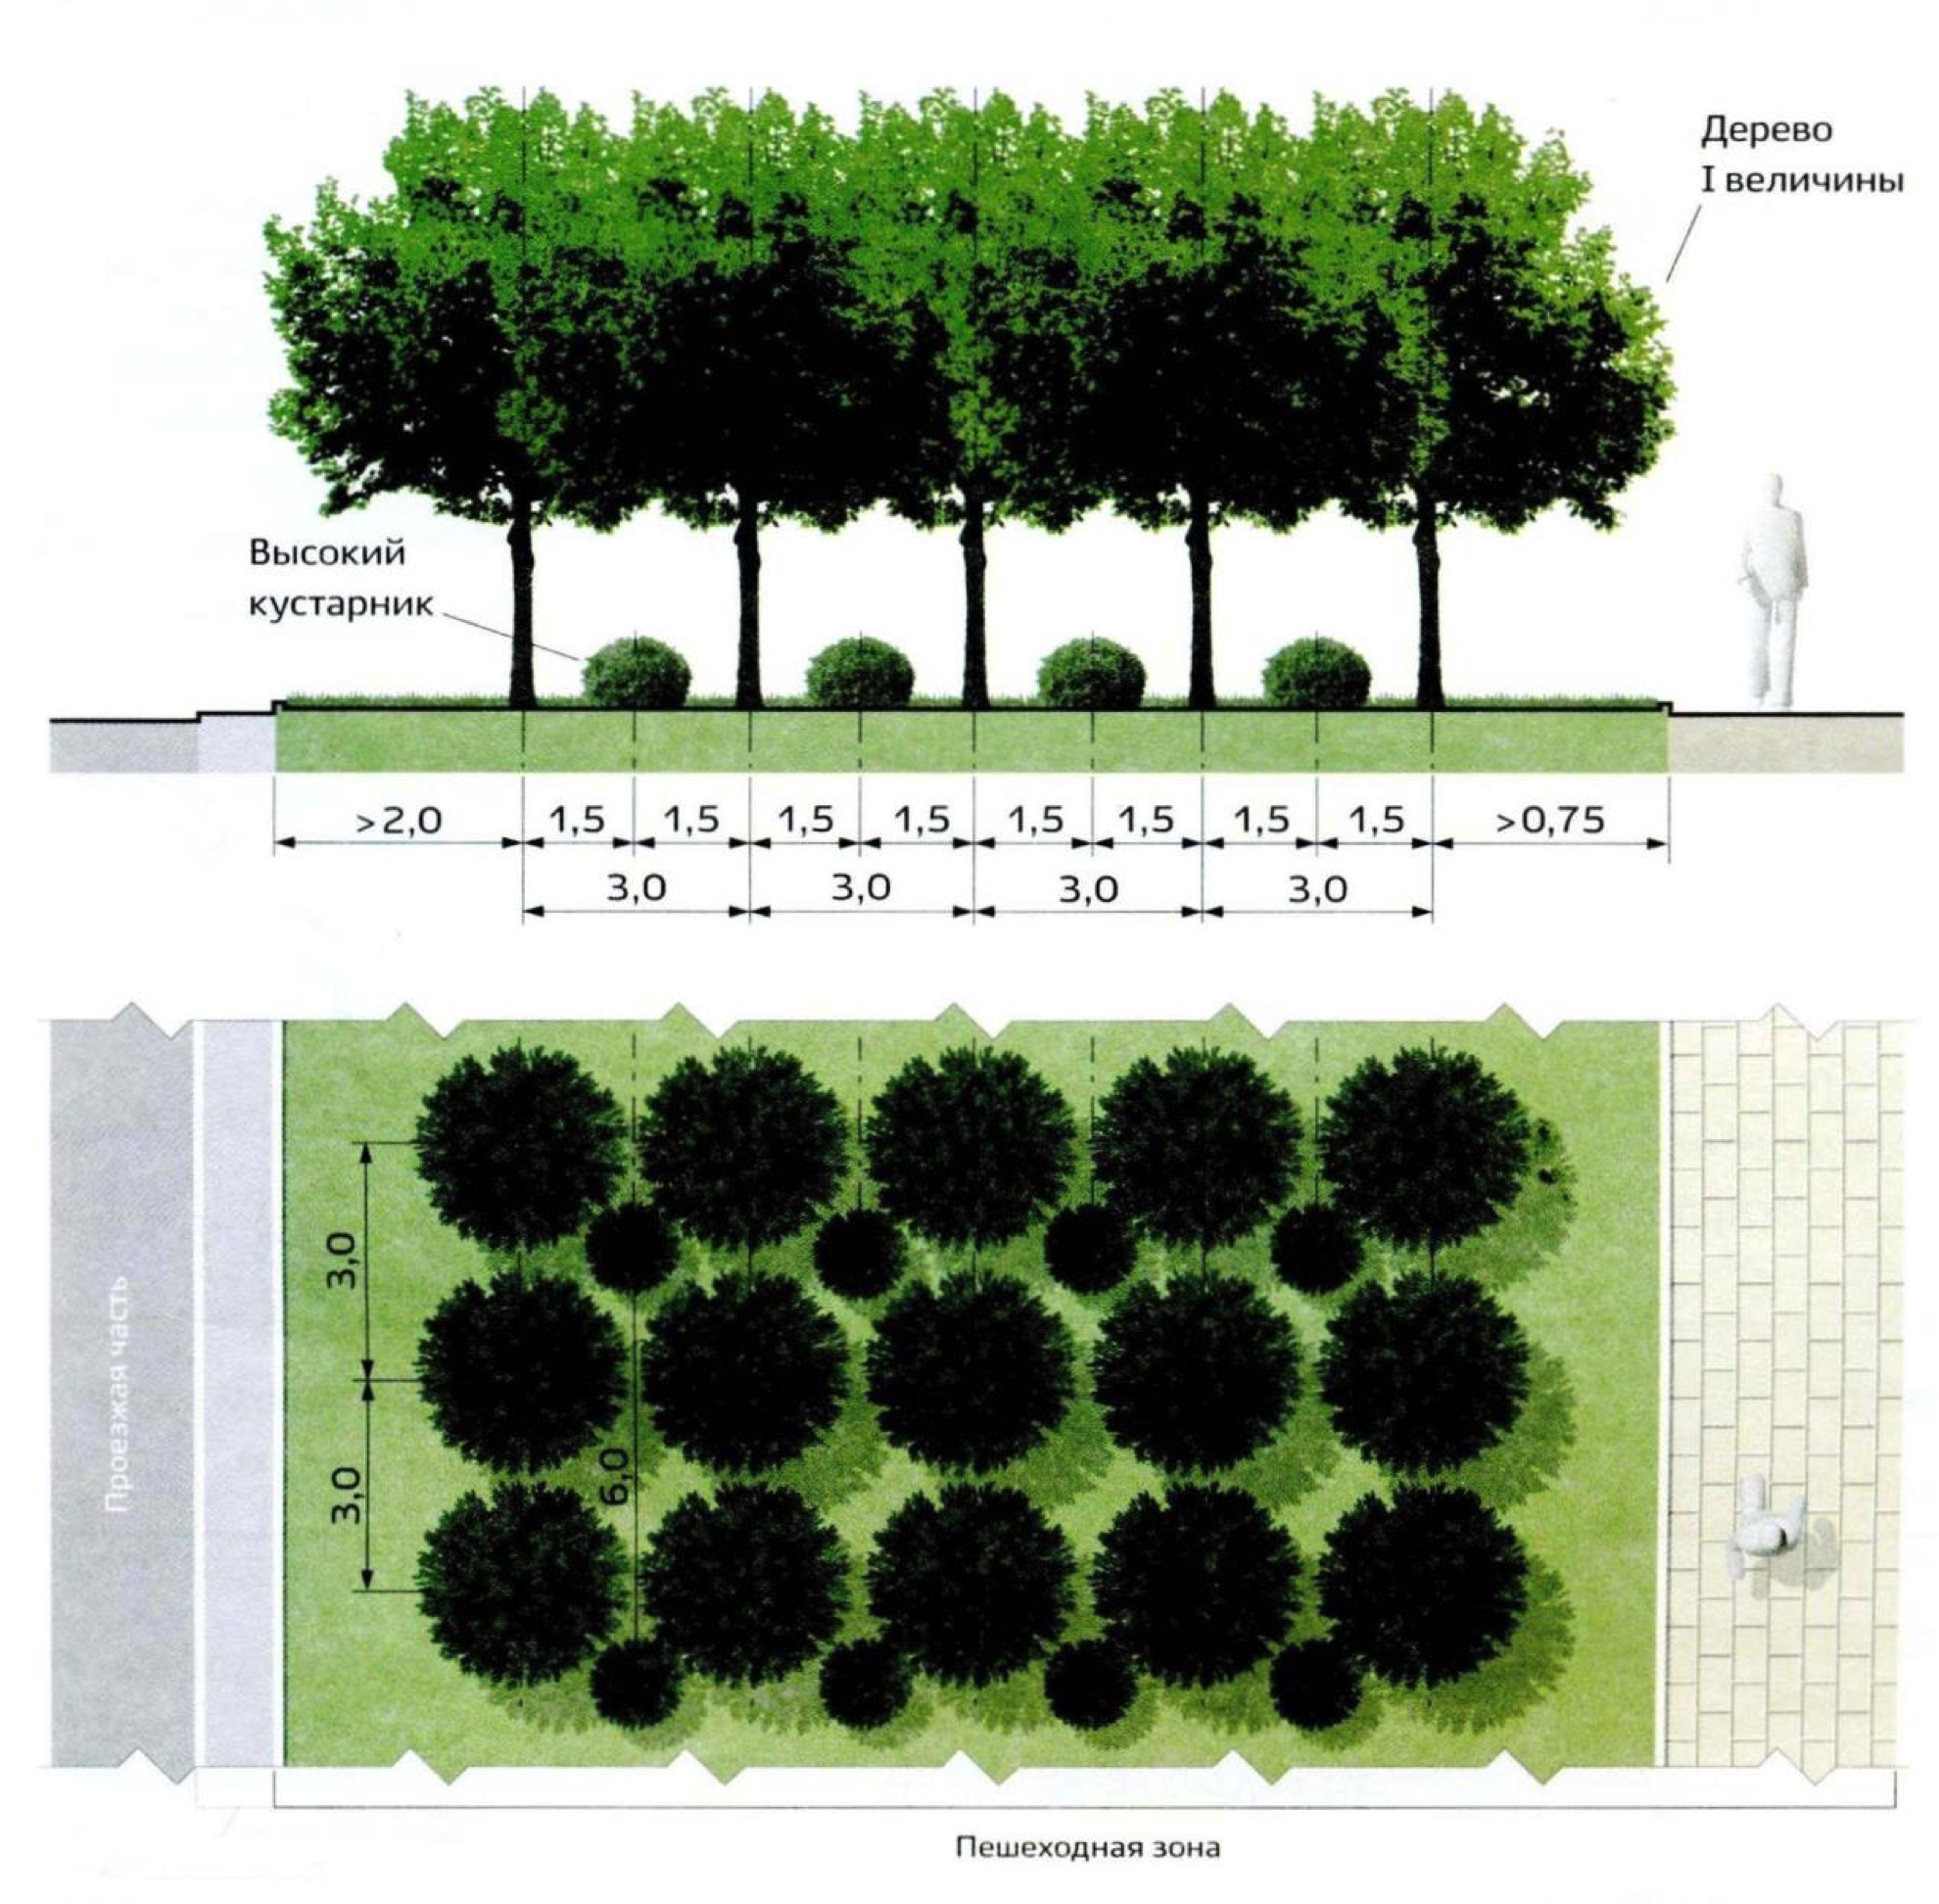 Как правильно посадить деревья на участке. Схема посадки древесных растений. Схема озеленения. Ассортимент деревьев и кустарников для озеленения. Посадка деревьев и кустарников.